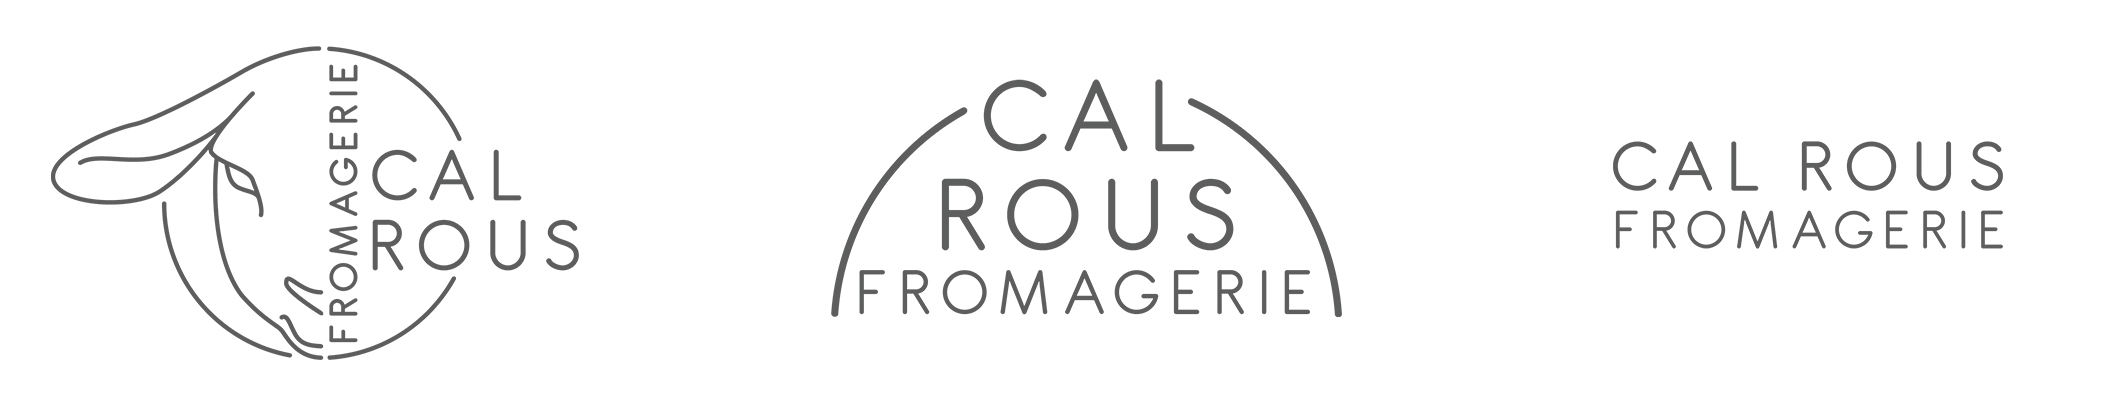 Exemple de déclinaisons de logotype dans une identité visuelle : la fromagerie Cal Rous